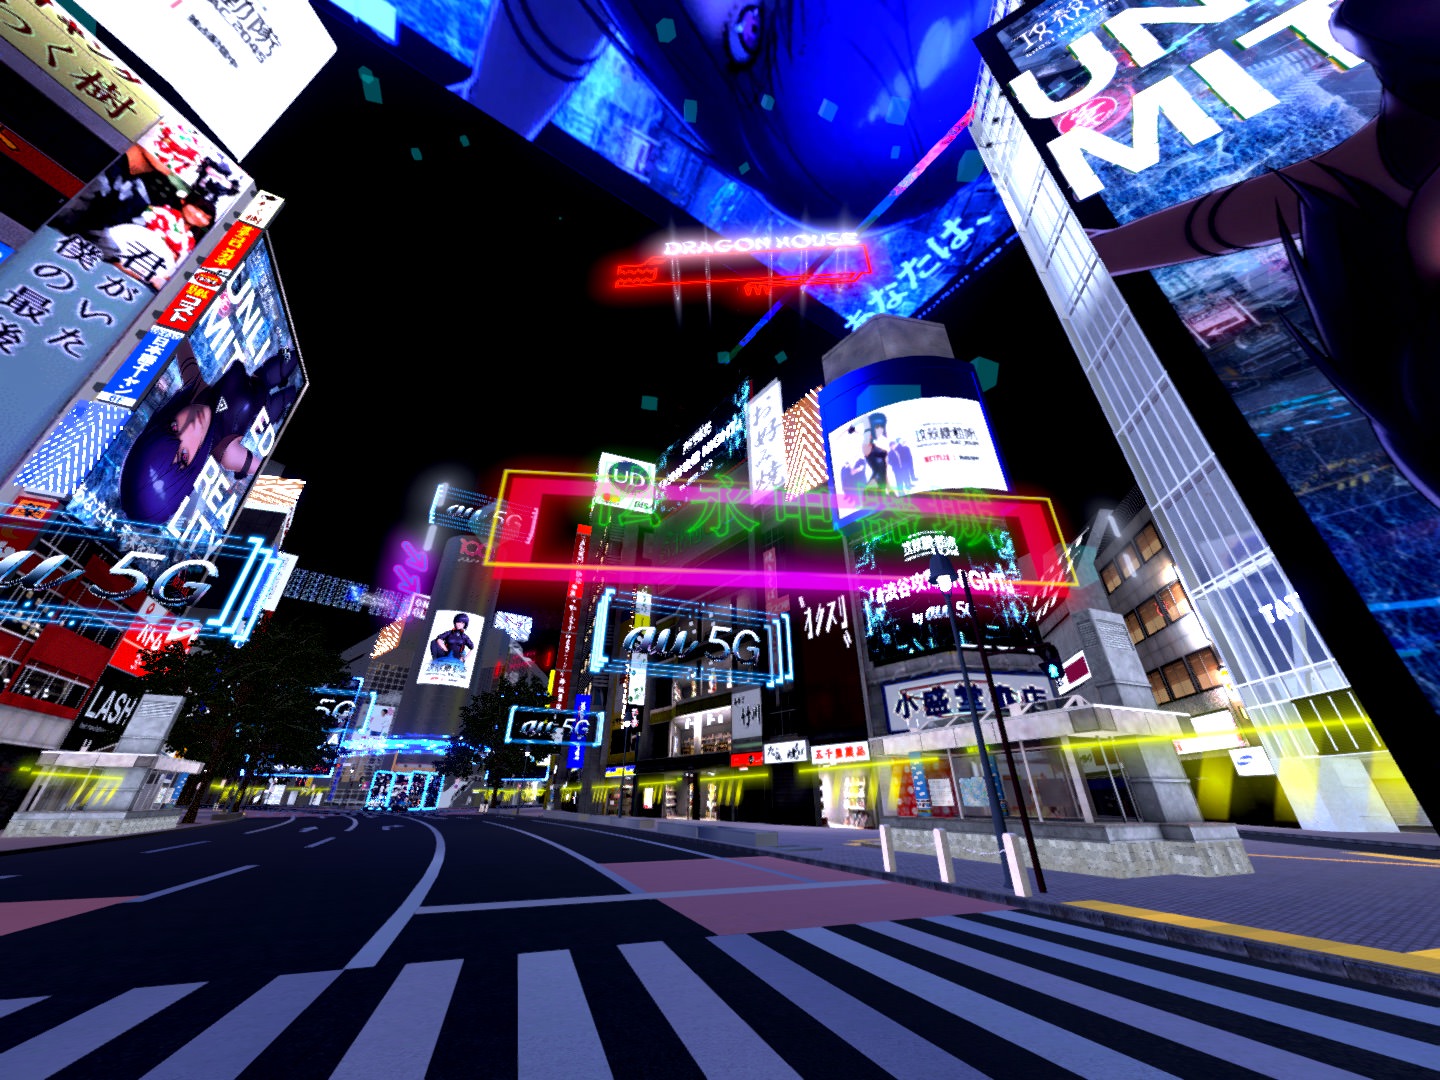 『攻殻機動隊 SAC_2045』の世界に一変したバーチャル渋谷の様子